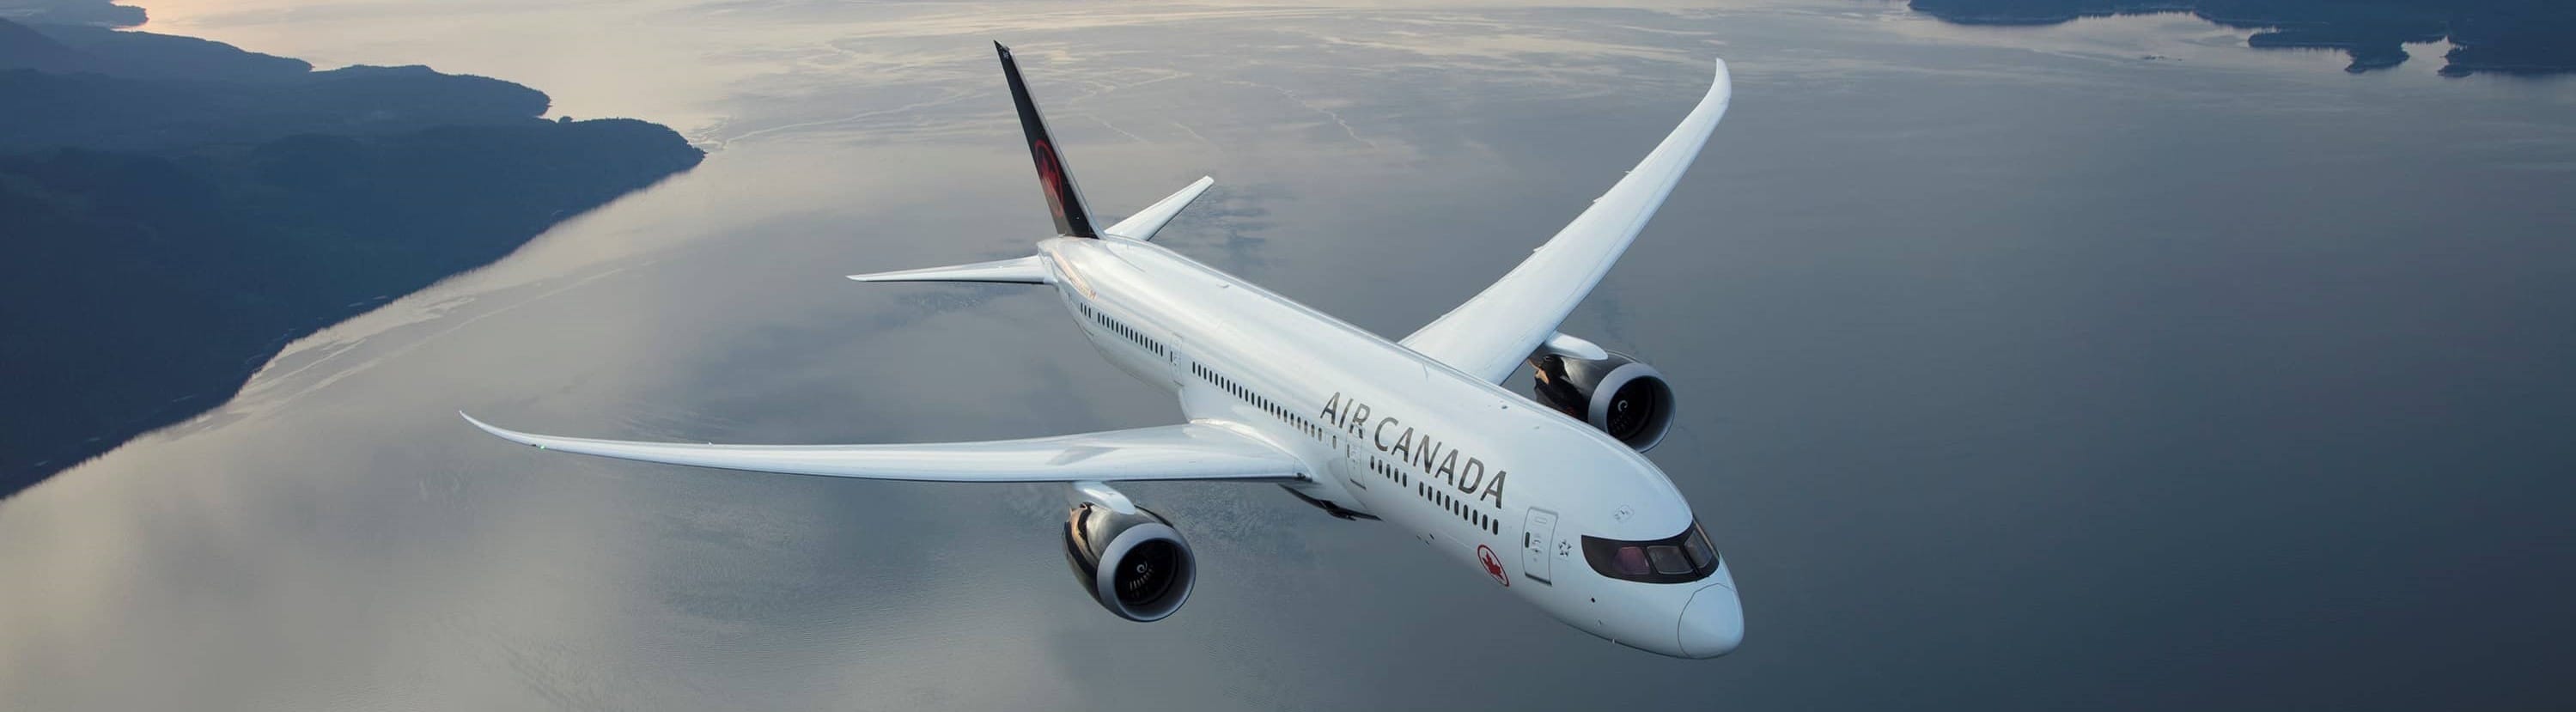 Le prix des billets d'avion d'Air Canada ne baissera pas: le